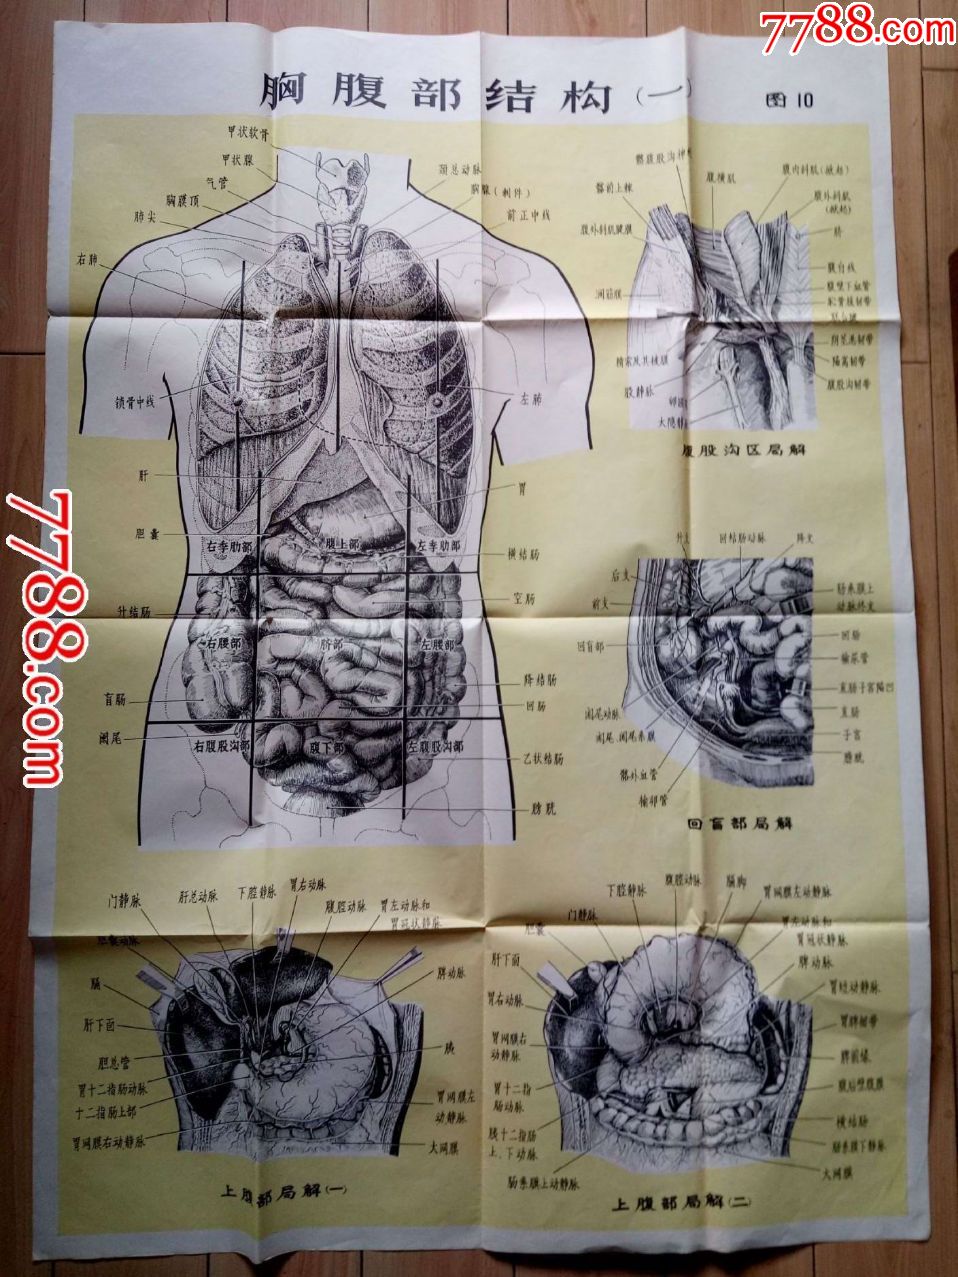 人体解剖挂图胸腹部结构一品相见图折叠即送